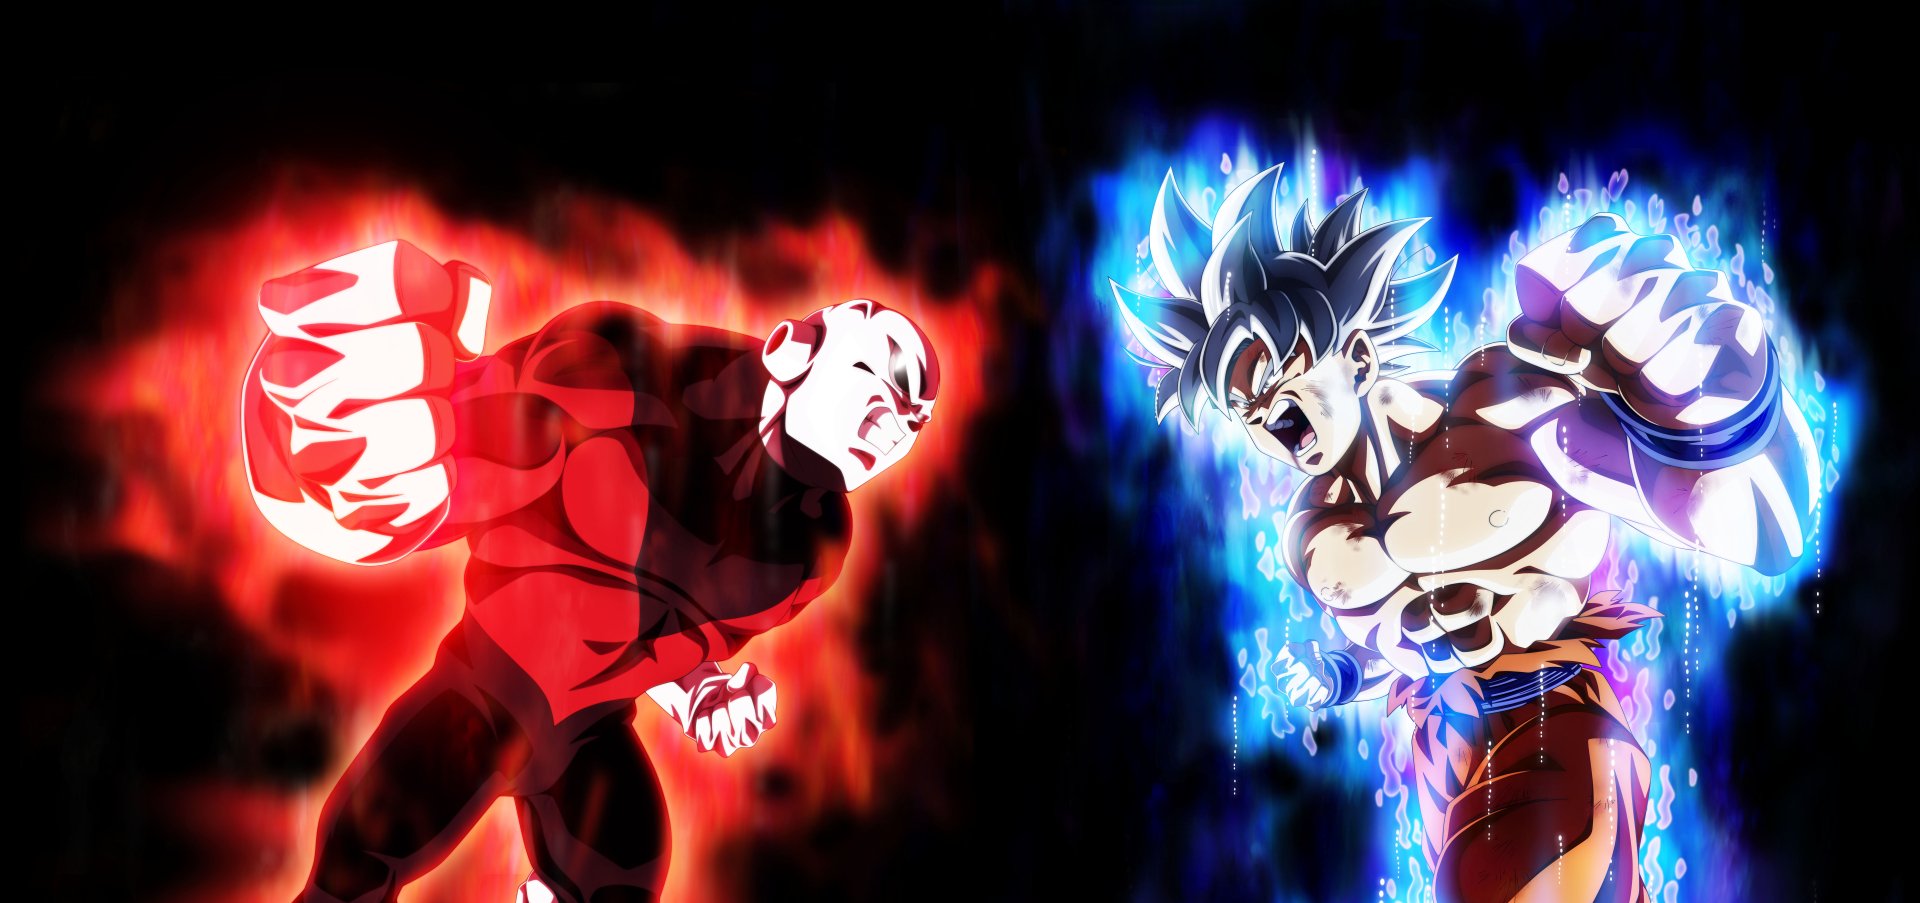 12756x6000 Goku vs Jiren by NekoAR Wallpaper Background Image. 